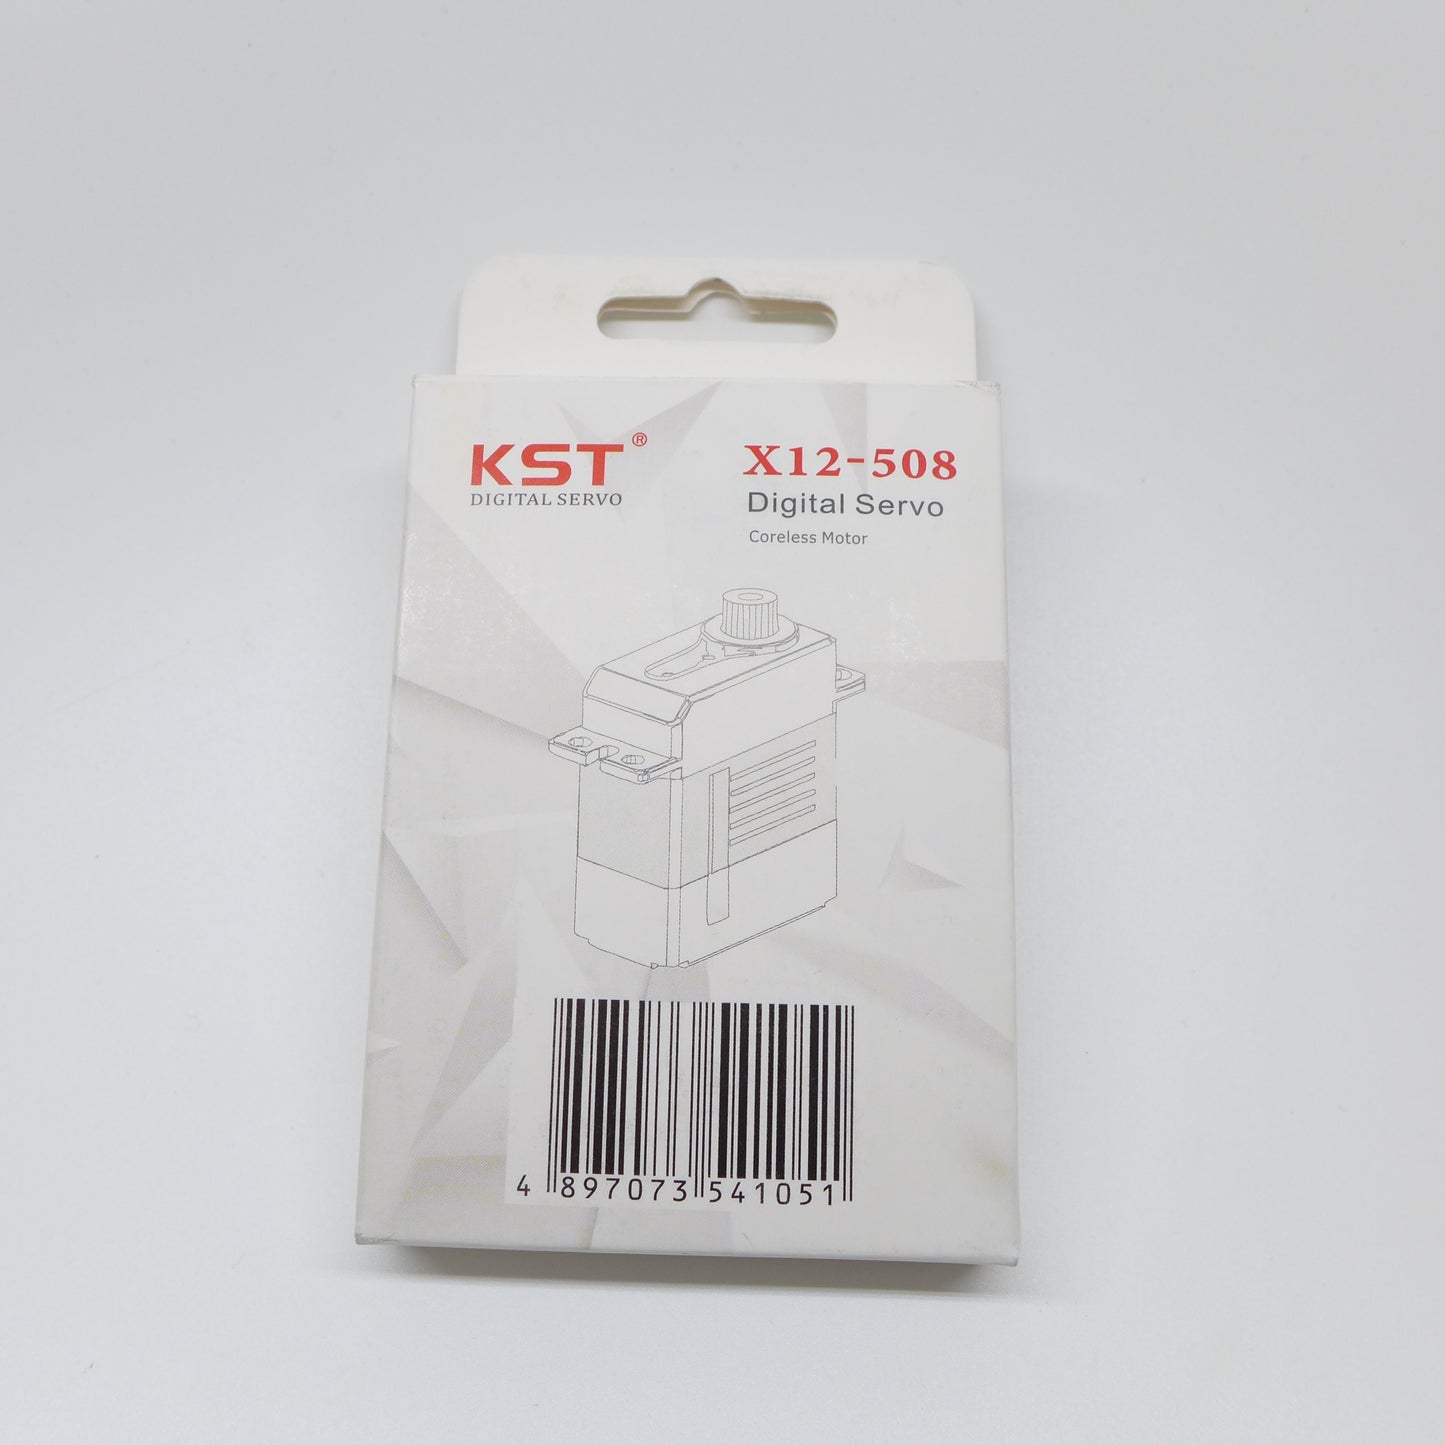 KST Digital Servo X12-508